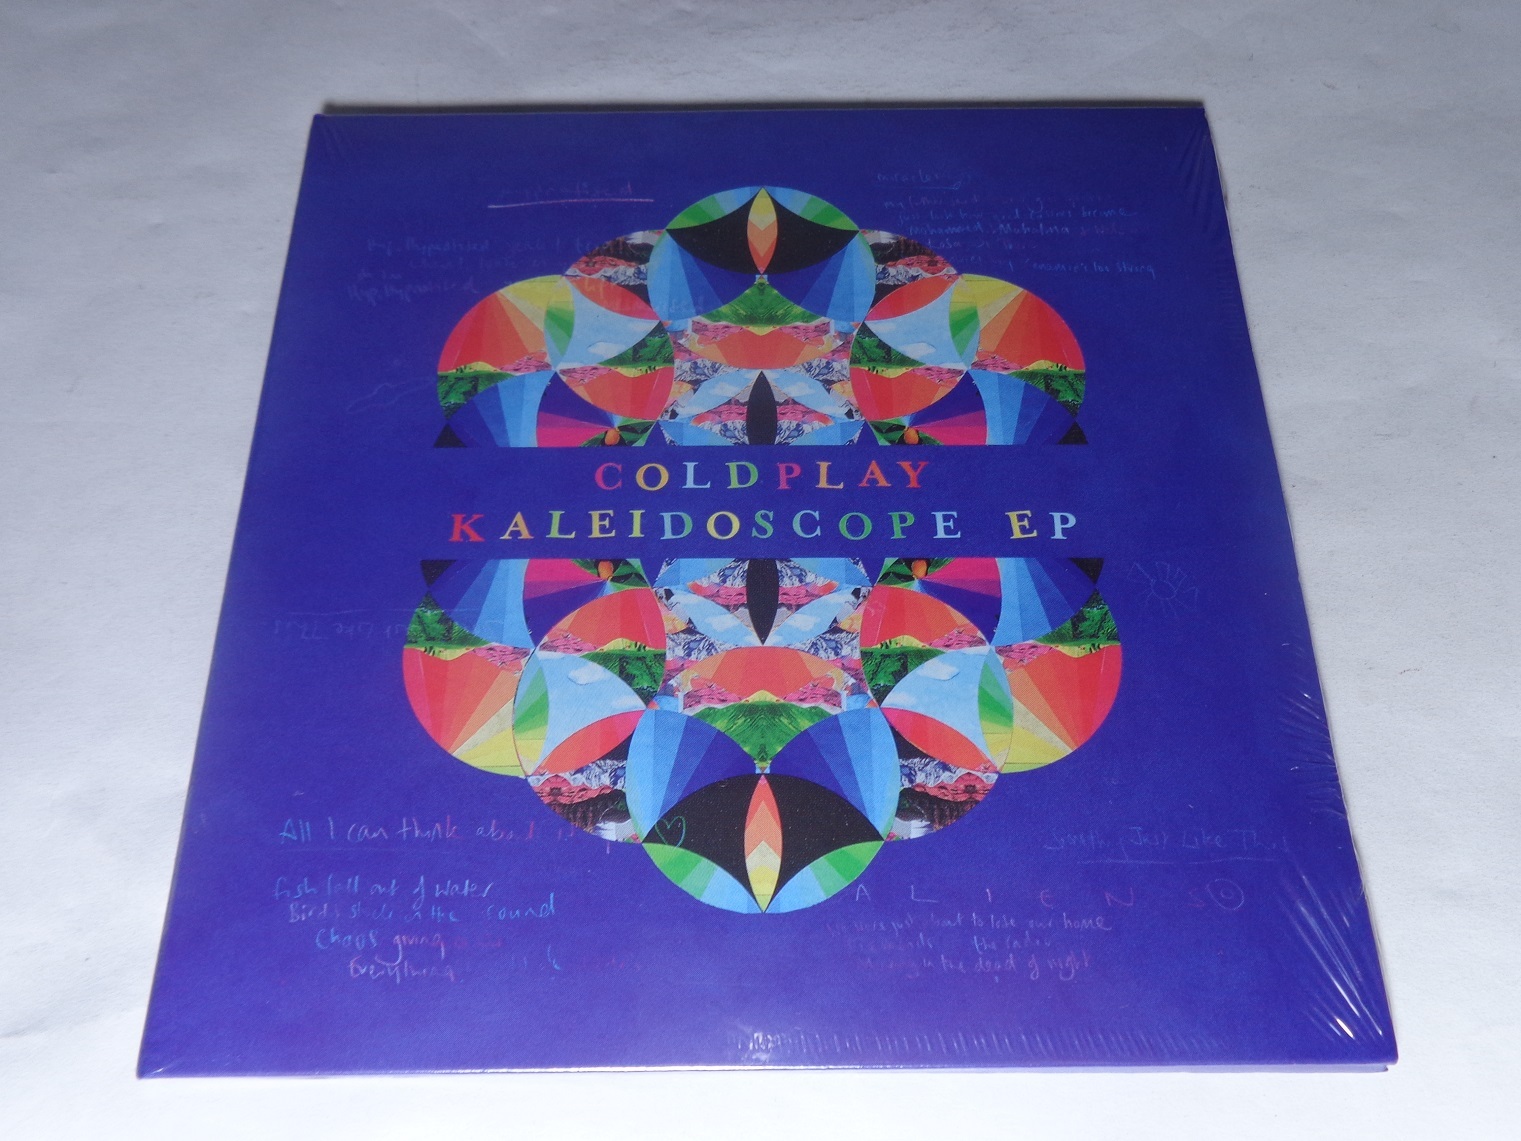 CD - Coldplay - Kaleidoscope EP (Lacrado)